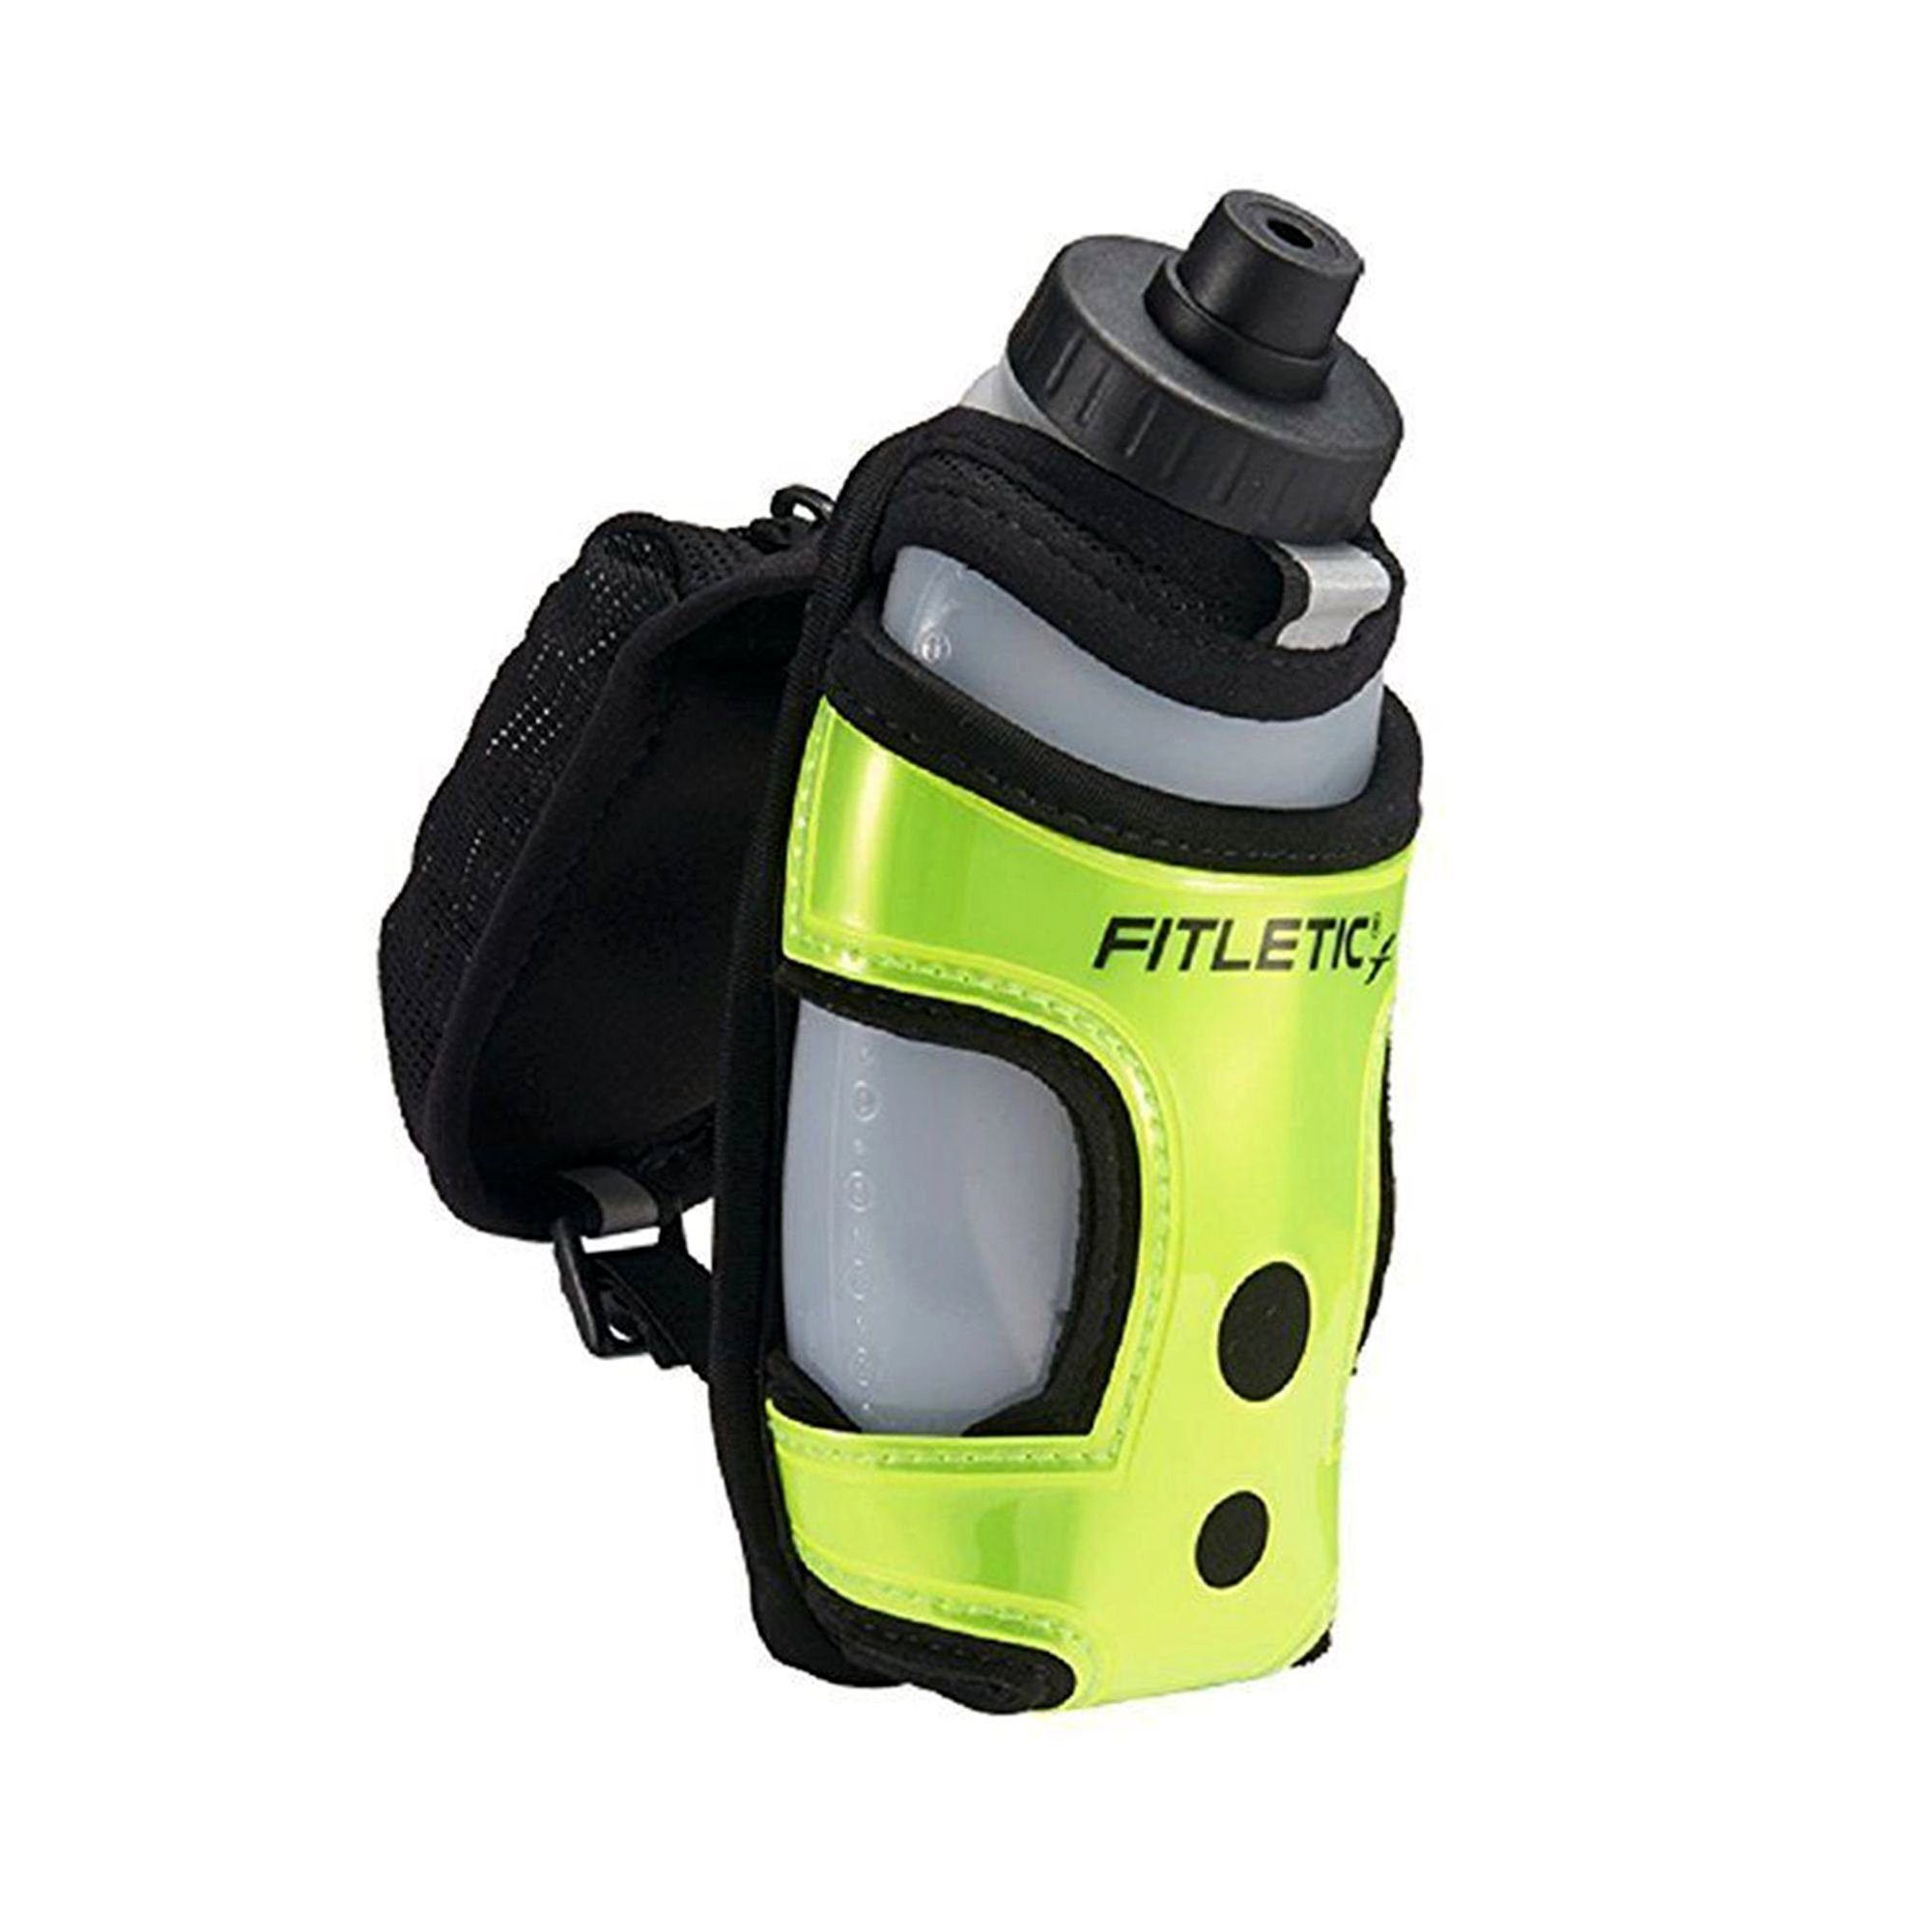 Handtasche Ein-Hand Hydra Premium Pocket, mit Laufausrüstung Neon-Grün Laufgürtel Trinksystem Trinkflasche, Fitletic